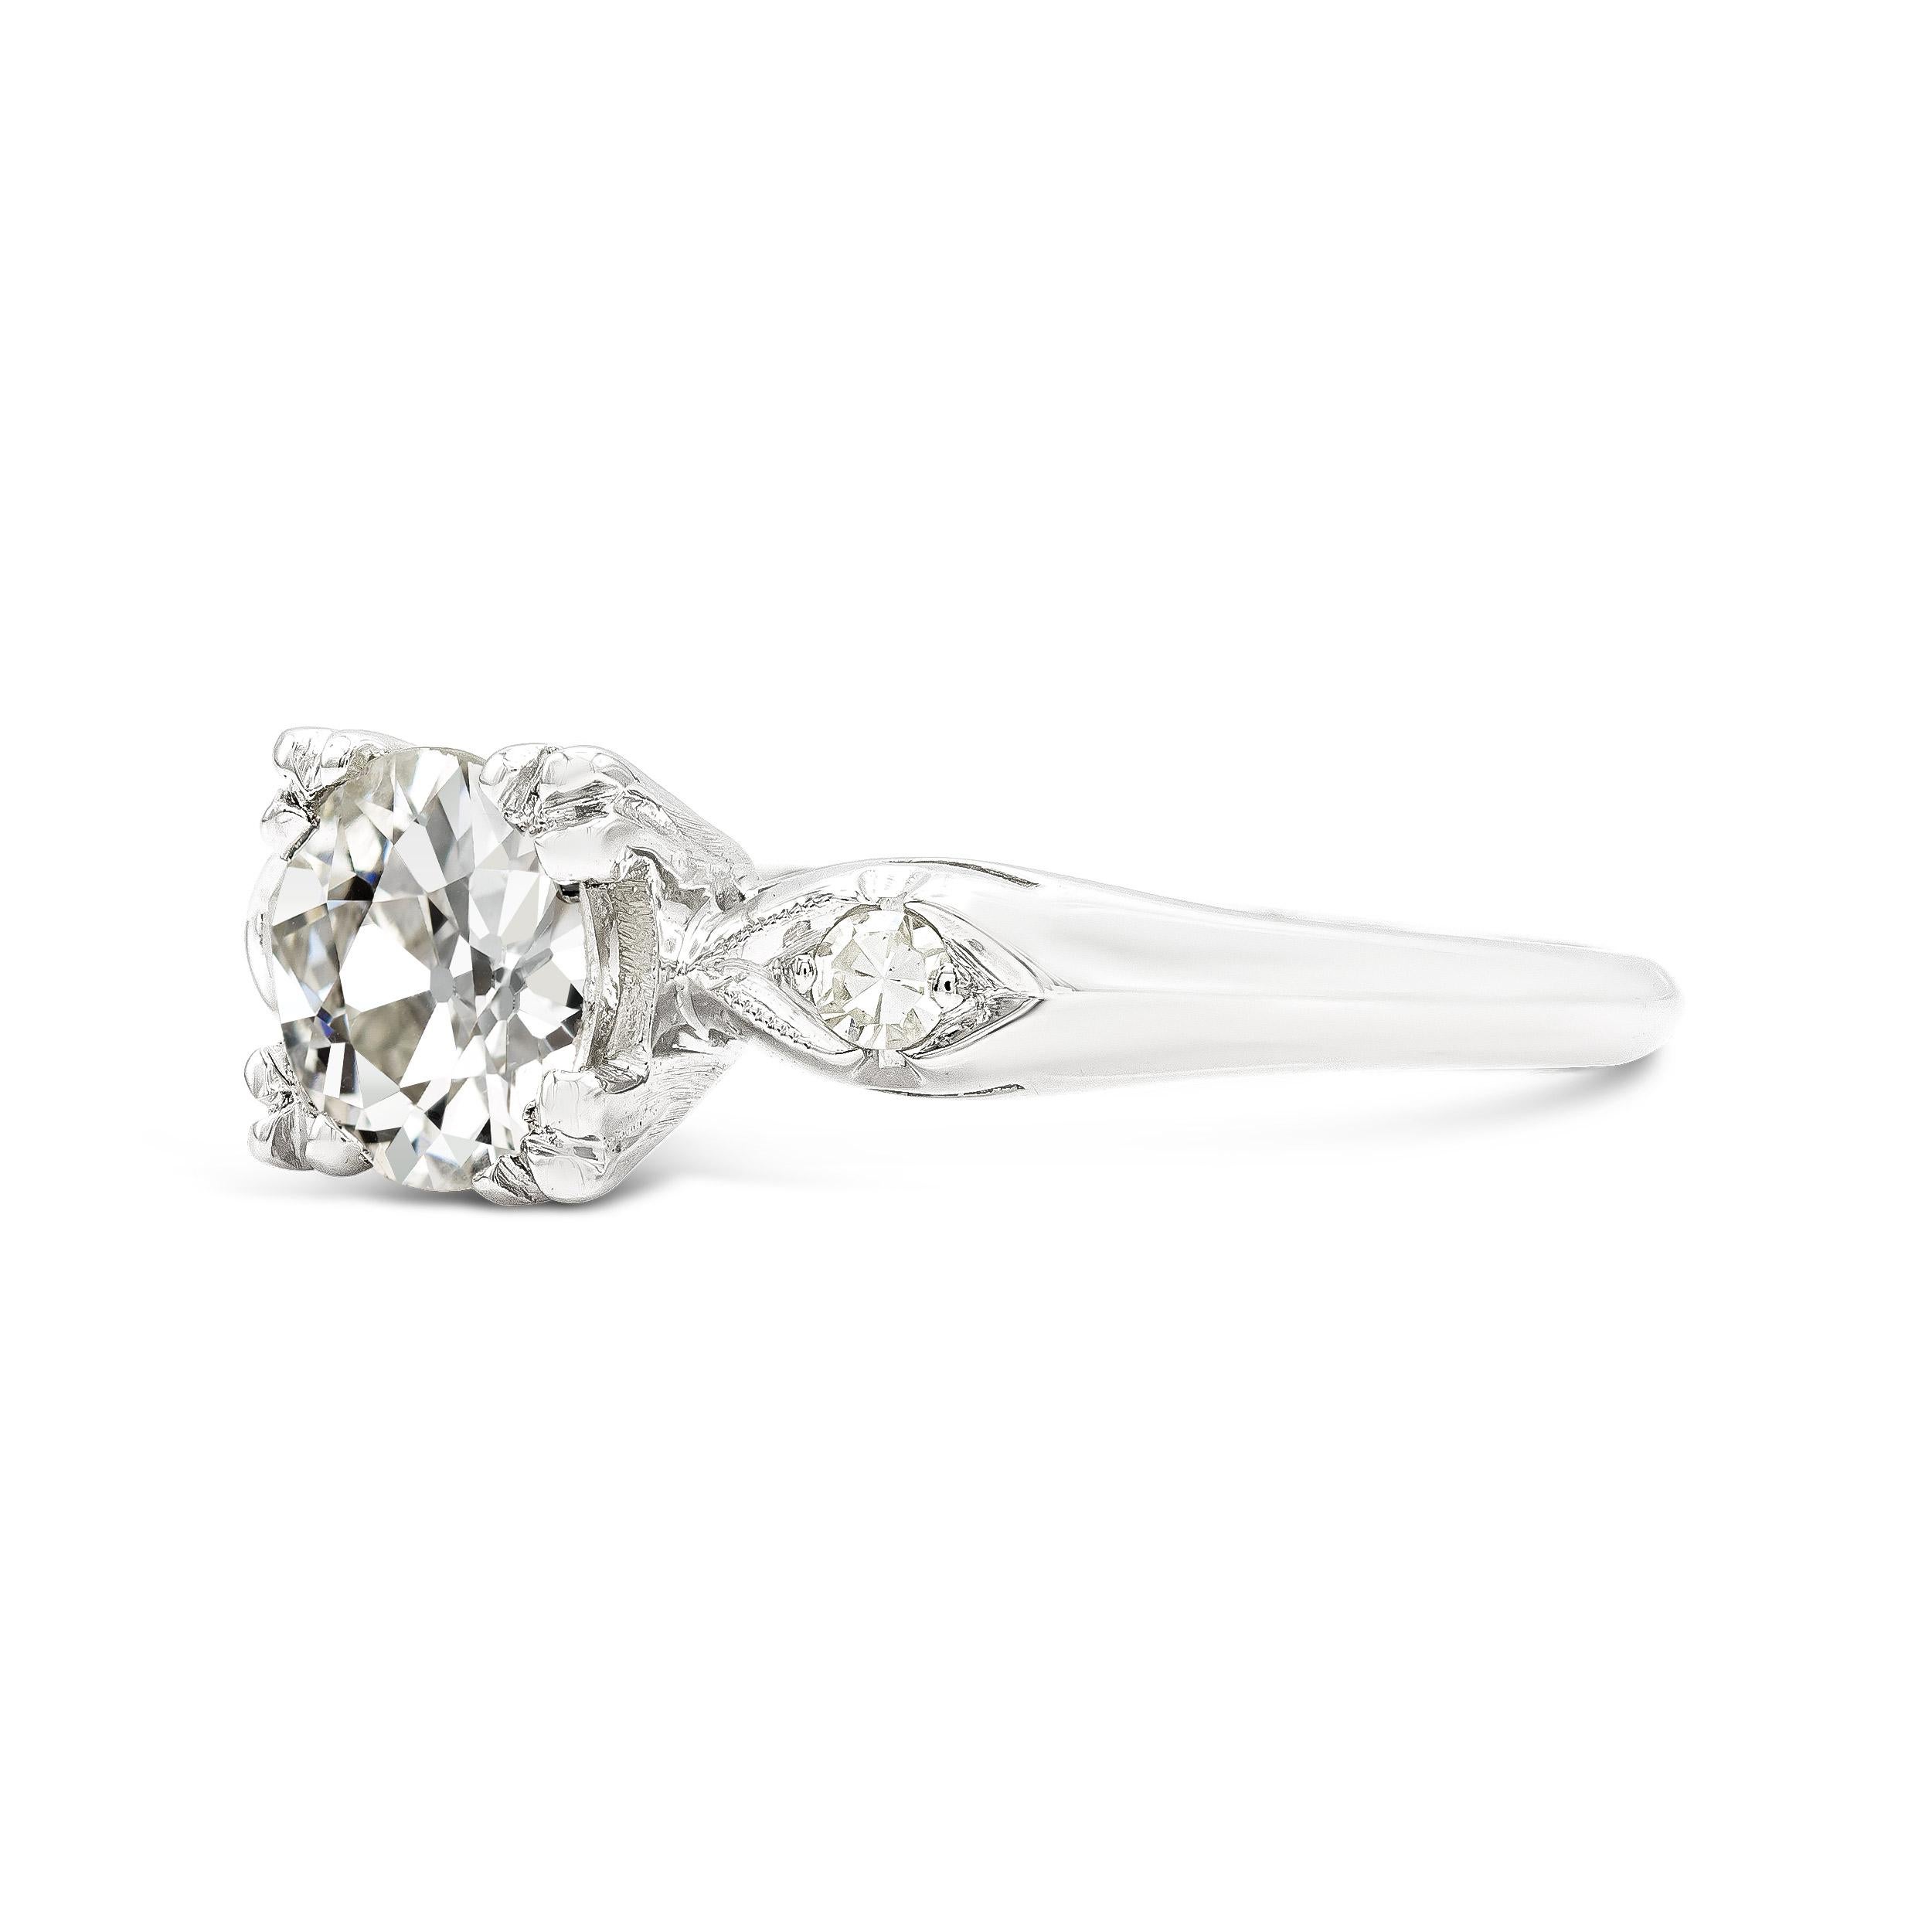 Dieser Ring ist von klassischer Eleganz und ein großartiges Beispiel für Art-Déco-Design. Wir lieben Diamanten, die größer erscheinen als ihr Karatgewicht, und dieser alte Euro sieht eher aus wie ein 1,25-Karat-Diamant. Komplettiert wird dieser